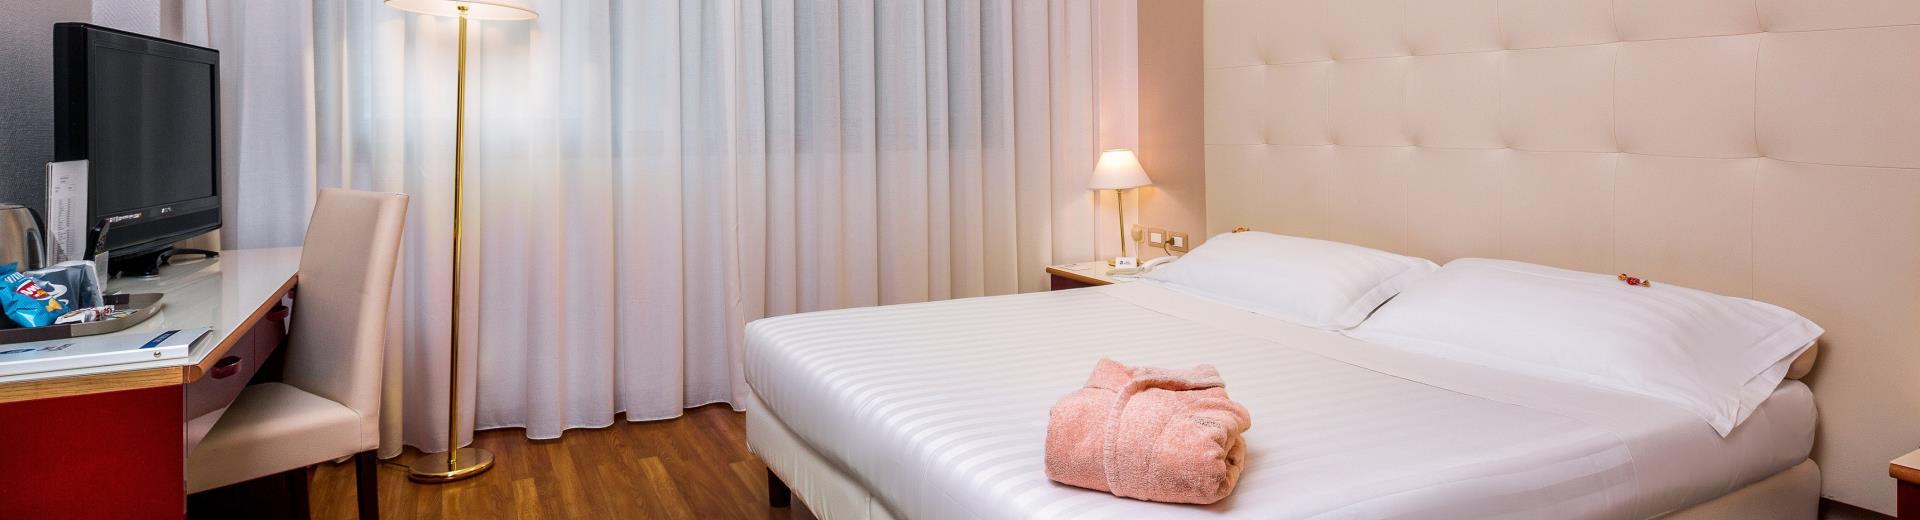 Scopri il comfort delle Camere Superior del BW Air Hotel Linate Milano, 4 stelle vicino all''''Aeroporto di Linate!